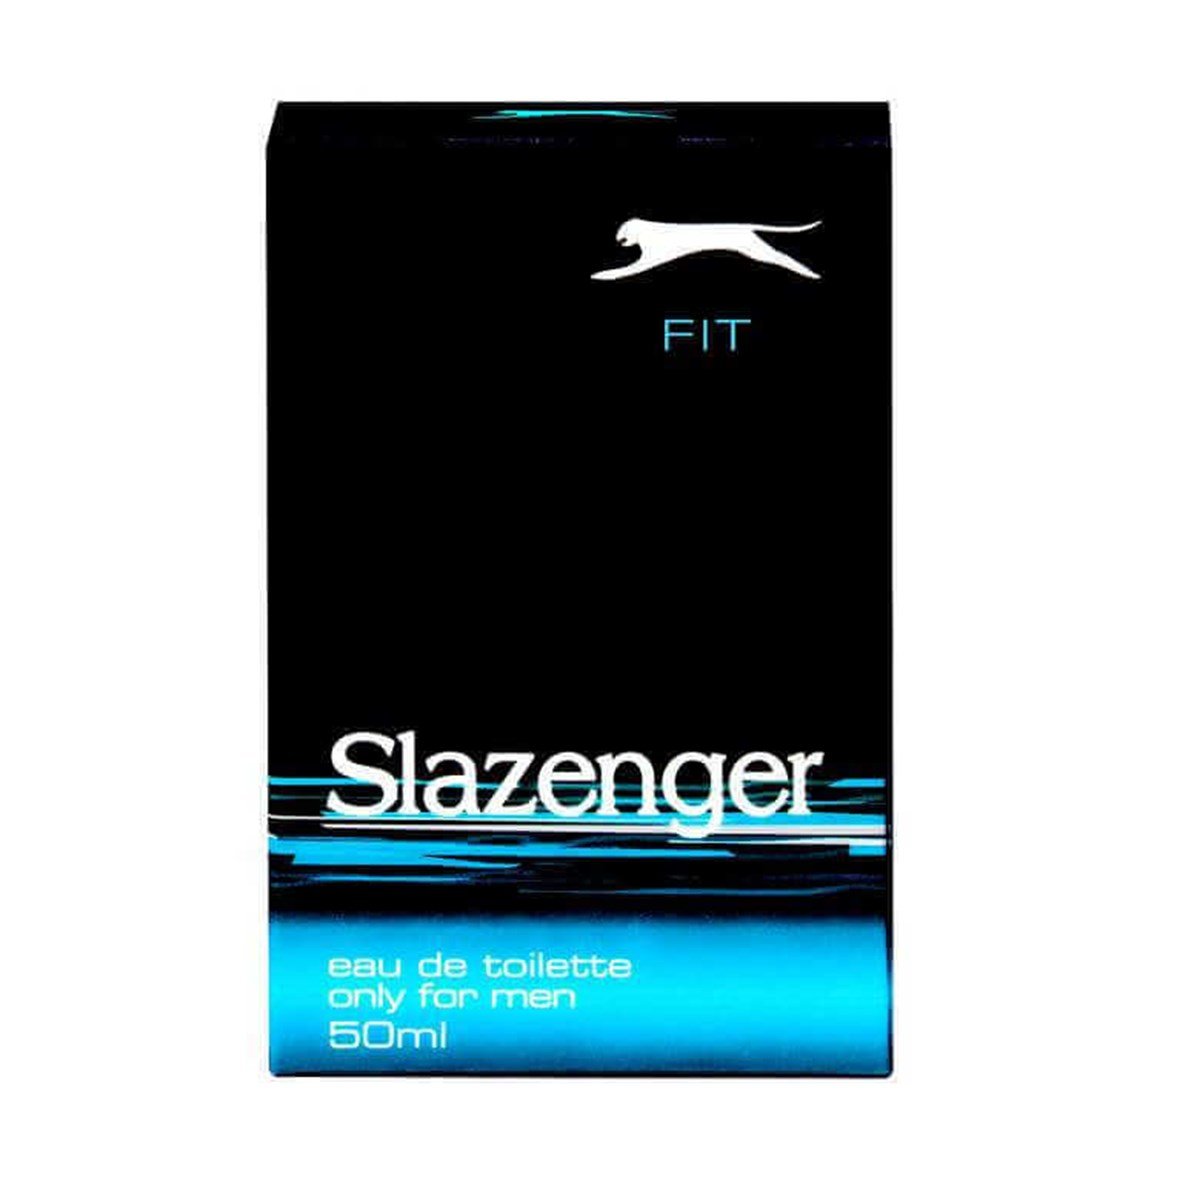 Slazenger Fit EDT 50 ml Erkek Parfüm Fiyatları | Dermosiparis.com